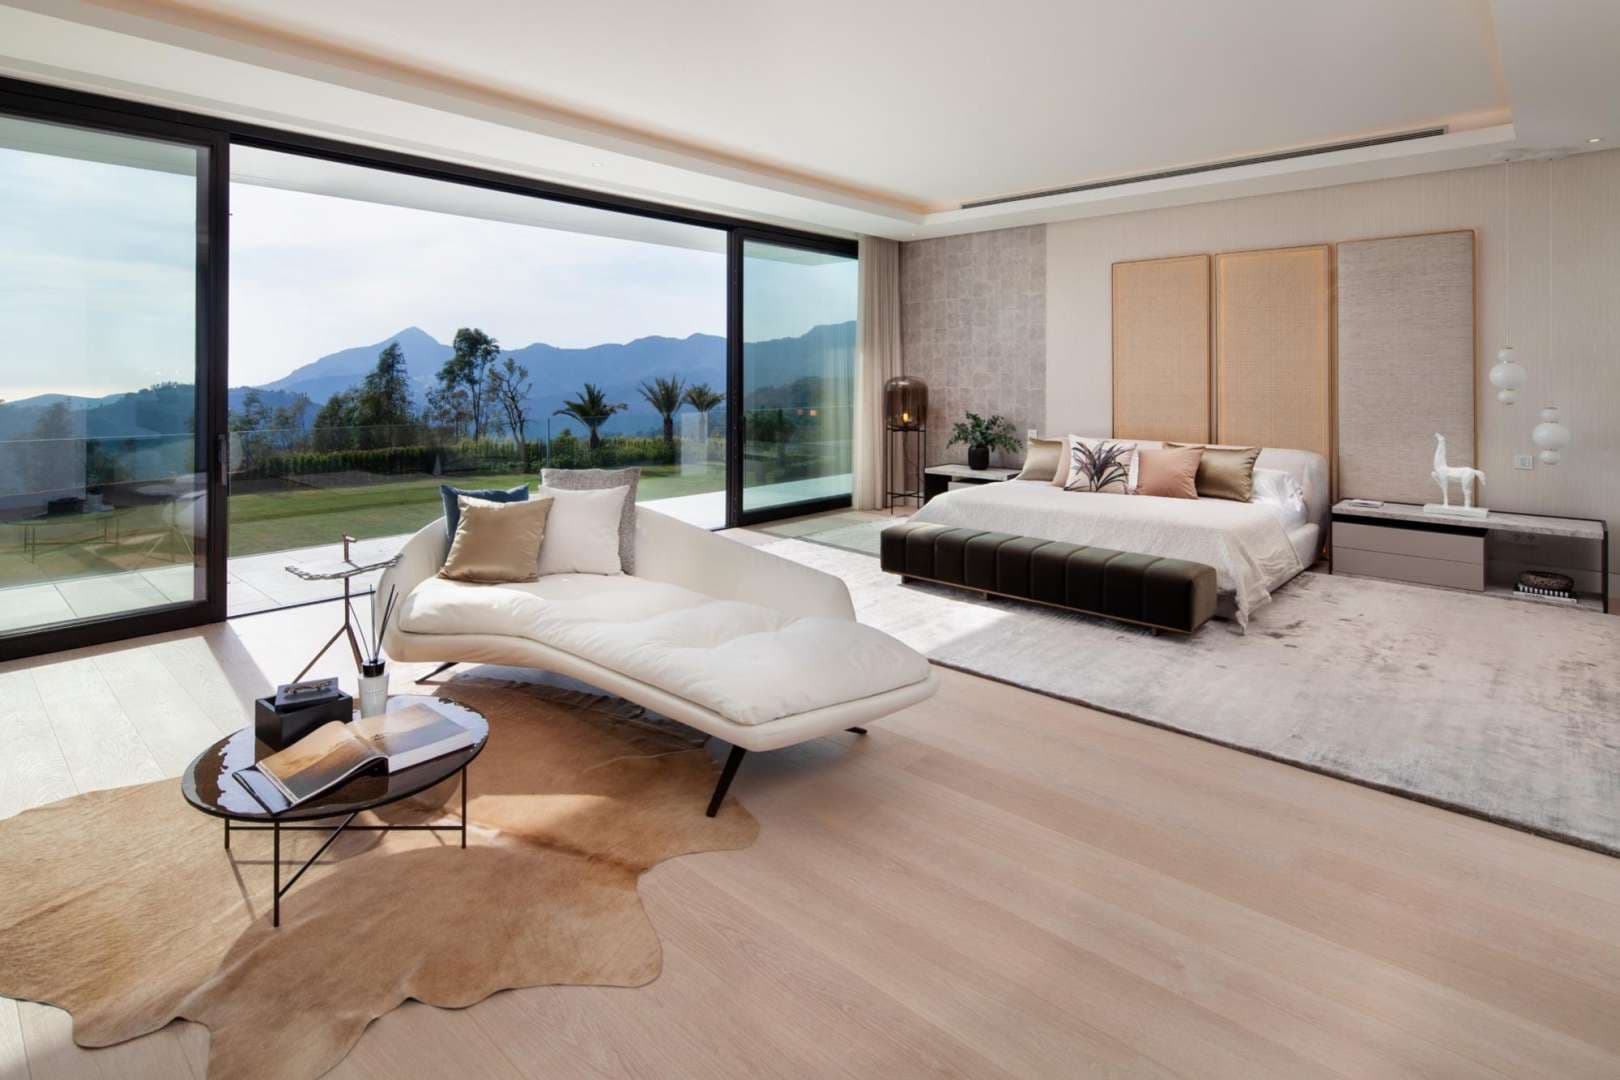 9 Bedroom Villa For Sale La Zagaleta Lp05820 13274ca21ca26d00.jpg